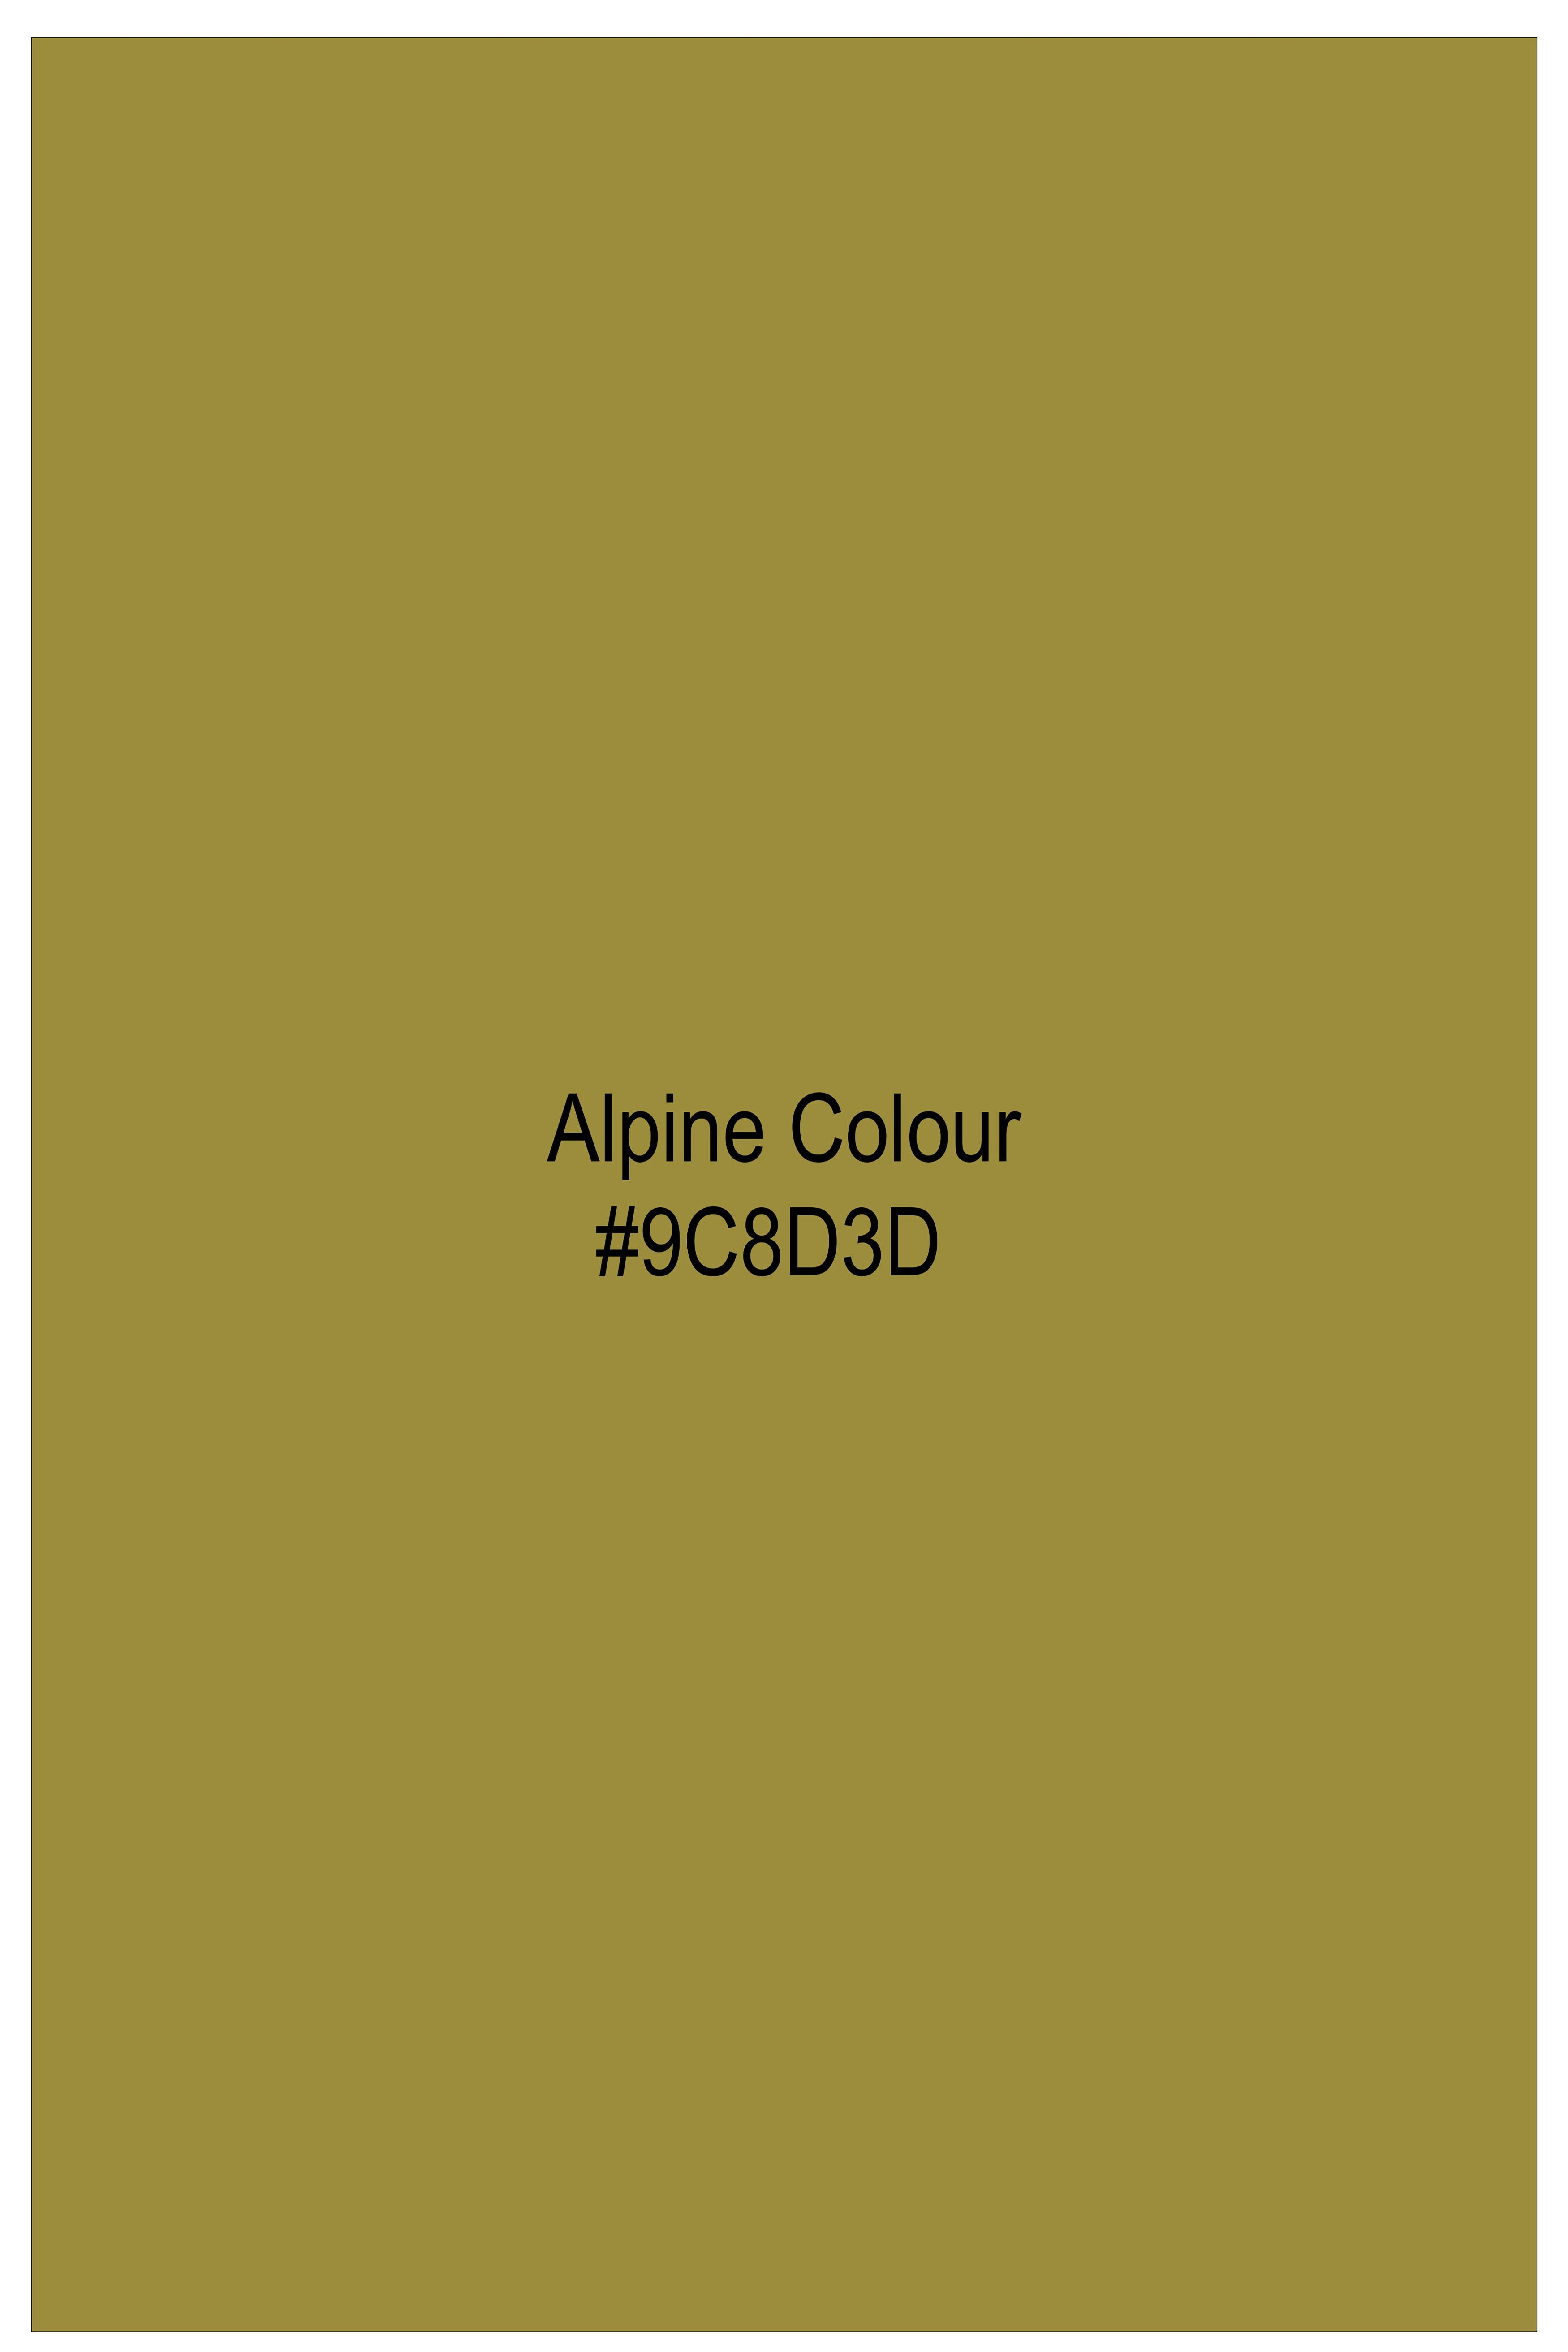 Alpine Brown Lord Ganesha Printed Subtle Sheen Super Soft Premium Cotton Designer Shirt 9212-BLK-RPRT081-38, 9212-BLK-RPRT081-H-38, 9212-BLK-RPRT081-39, 9212-BLK-RPRT081-H-39, 9212-BLK-RPRT081-40, 9212-BLK-RPRT081-H-40, 9212-BLK-RPRT081-42, 9212-BLK-RPRT081-H-42, 9212-BLK-RPRT081-44, 9212-BLK-RPRT081-H-44, 9212-BLK-RPRT081-46, 9212-BLK-RPRT081-H-46, 9212-BLK-RPRT081-48, 9212-BLK-RPRT081-H-48, 9212-BLK-RPRT081-50, 9212-BLK-RPRT081-H-50, 9212-BLK-RPRT081-52, 9212-BLK-RPRT081-H-52